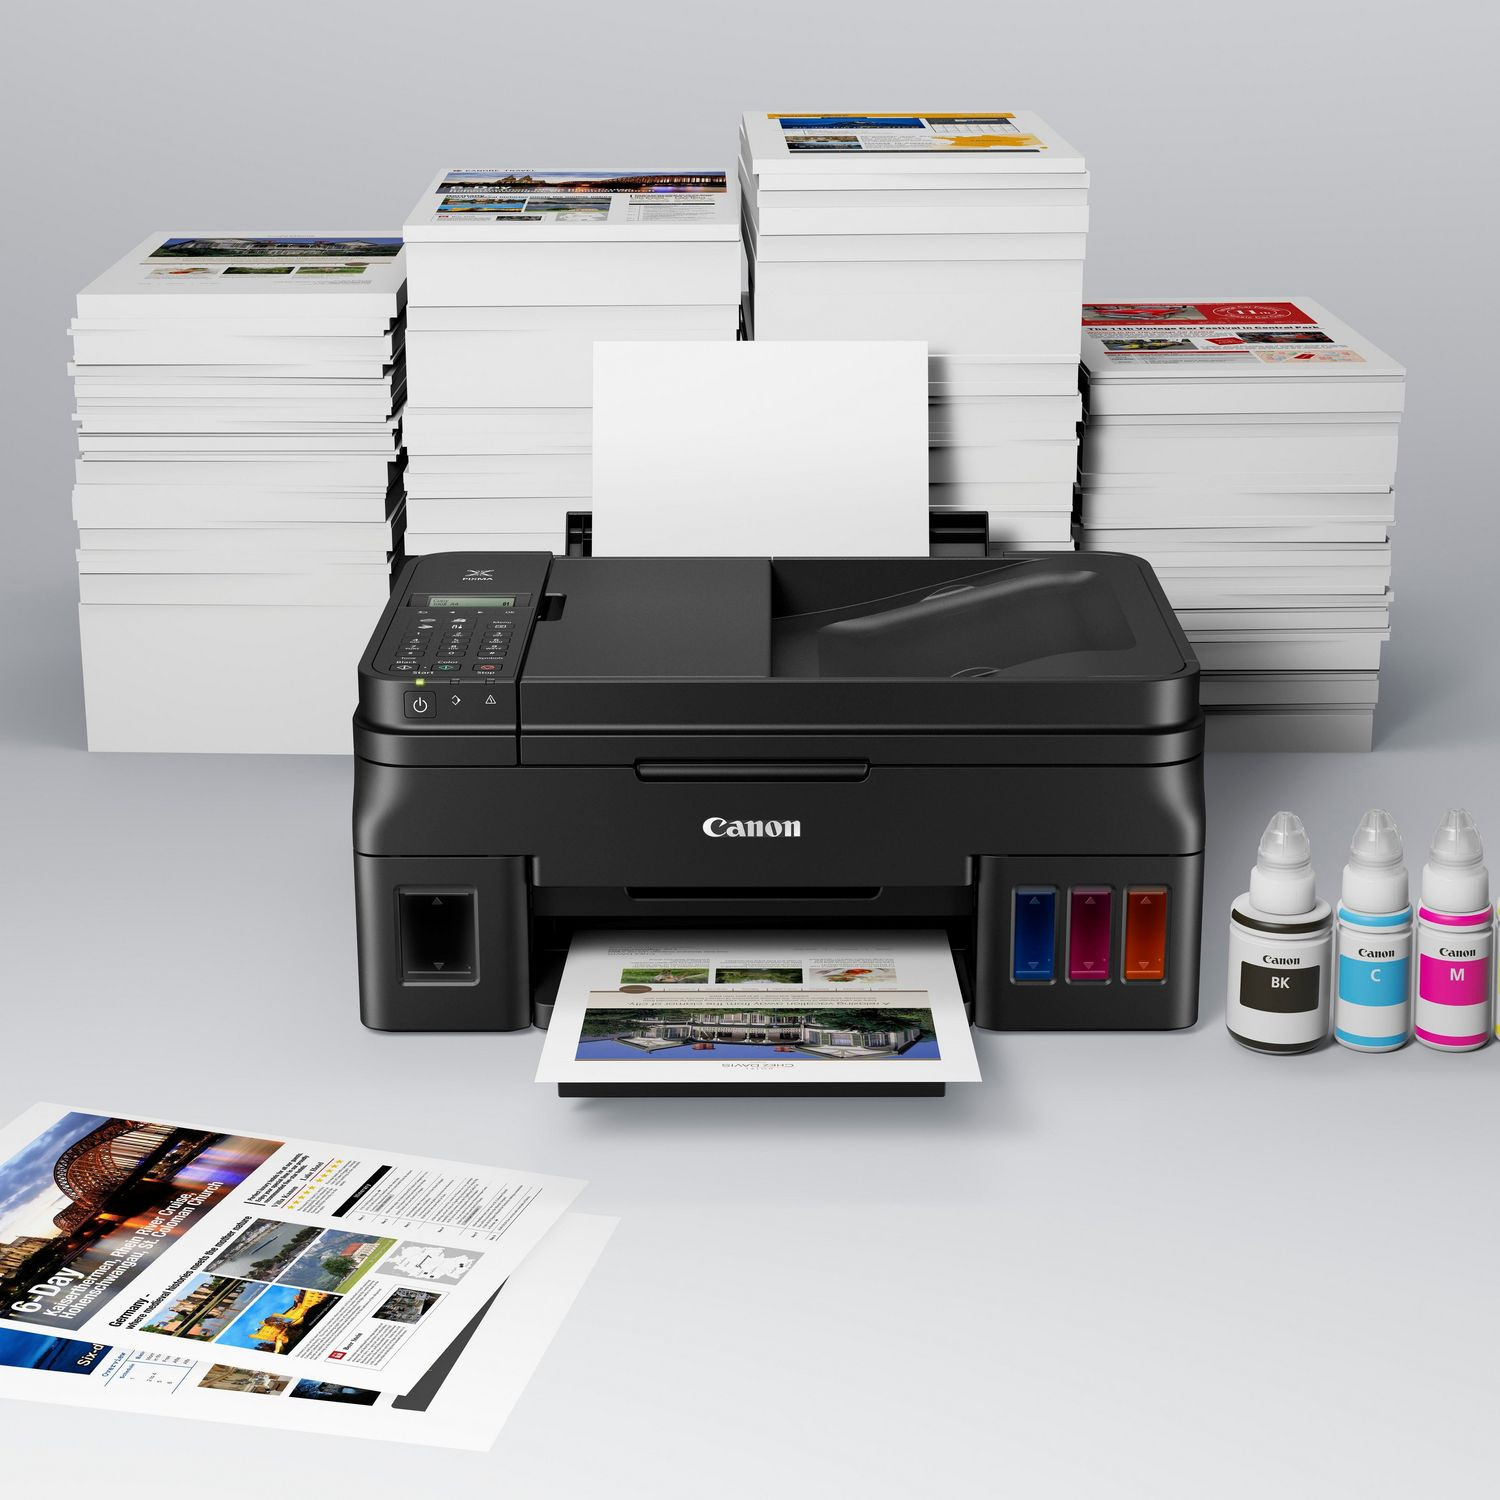 Quelle imprimante choisir pour scanner un document ?